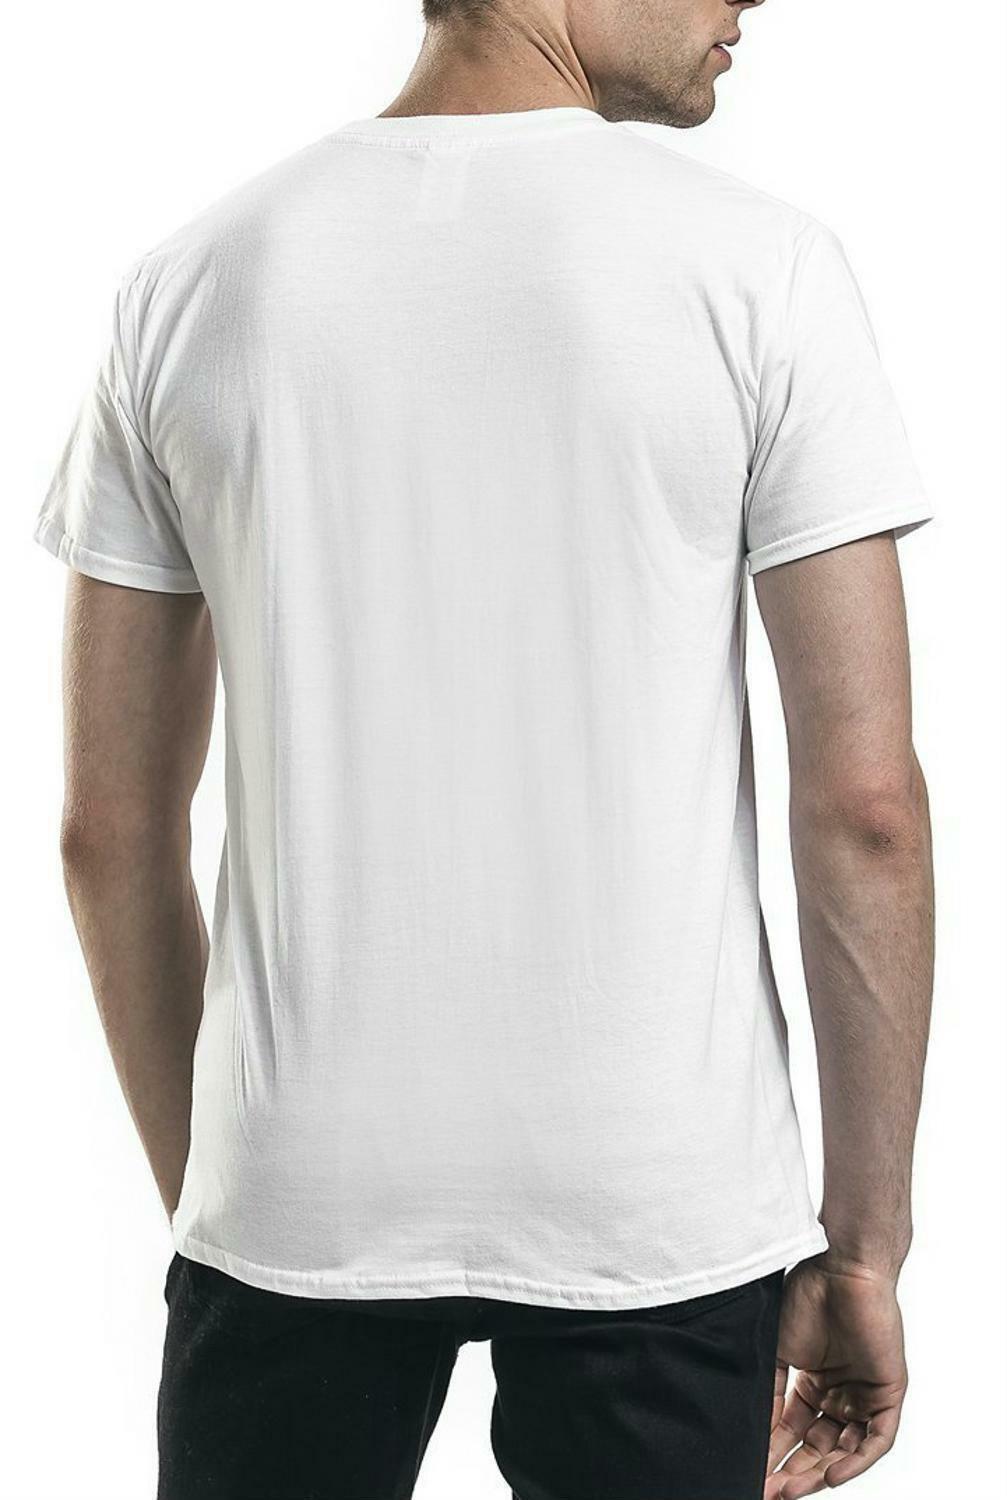 adidas originals adidas originals trefoil t-shirt uomo bianca cw0710